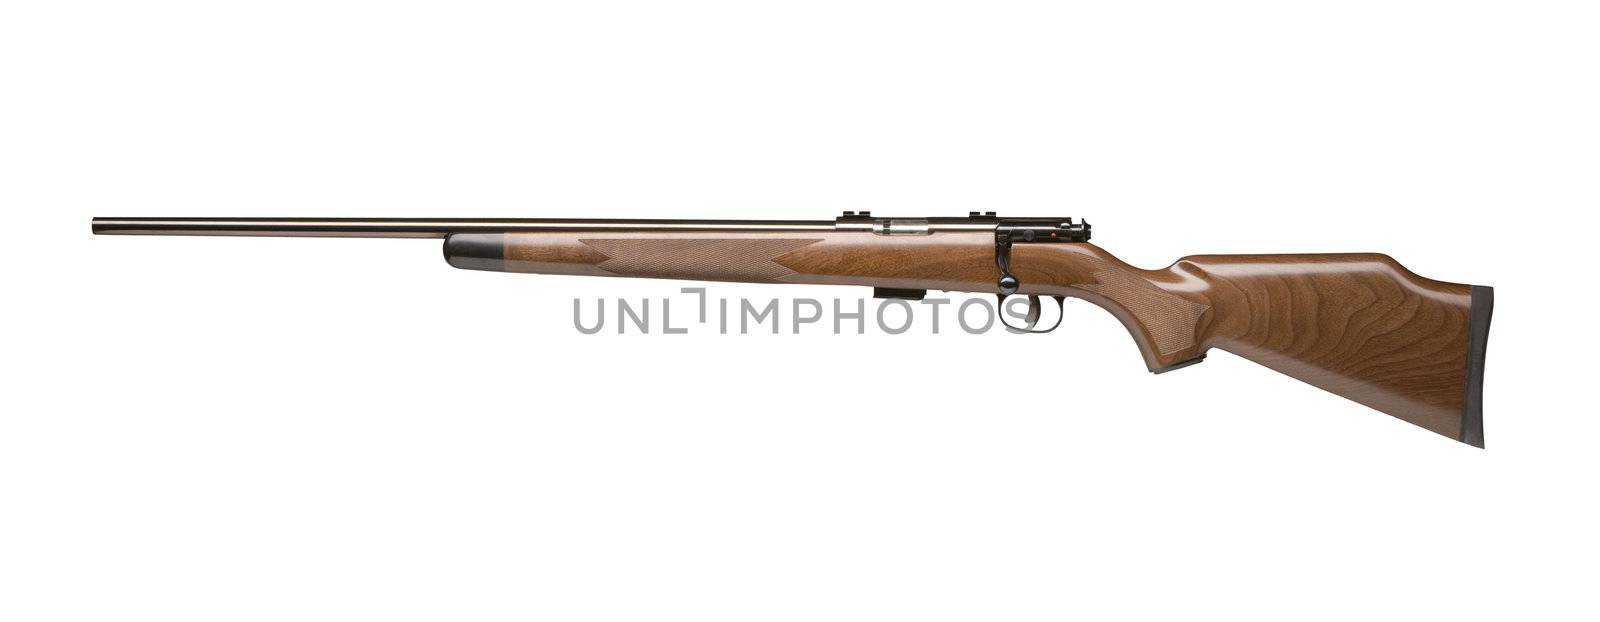 vintage gun isolated on white